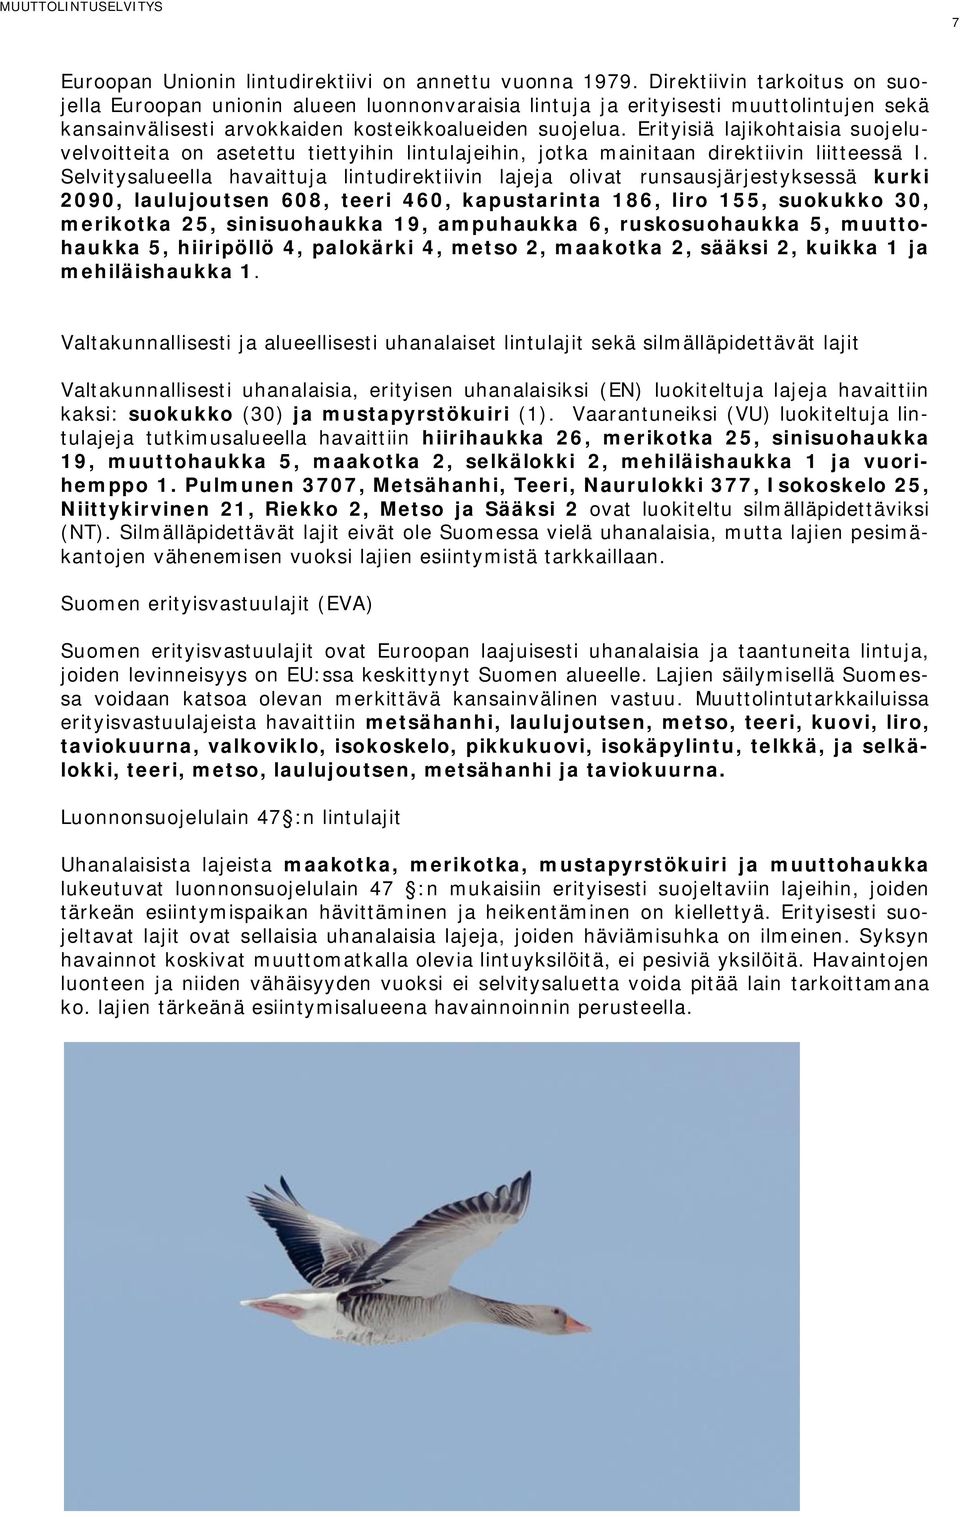 Erityisiä lajikohtaisia suojeluvelvoitteita on asetettu tiettyihin lintulajeihin, jotka mainitaan direktiivin liitteessä I.